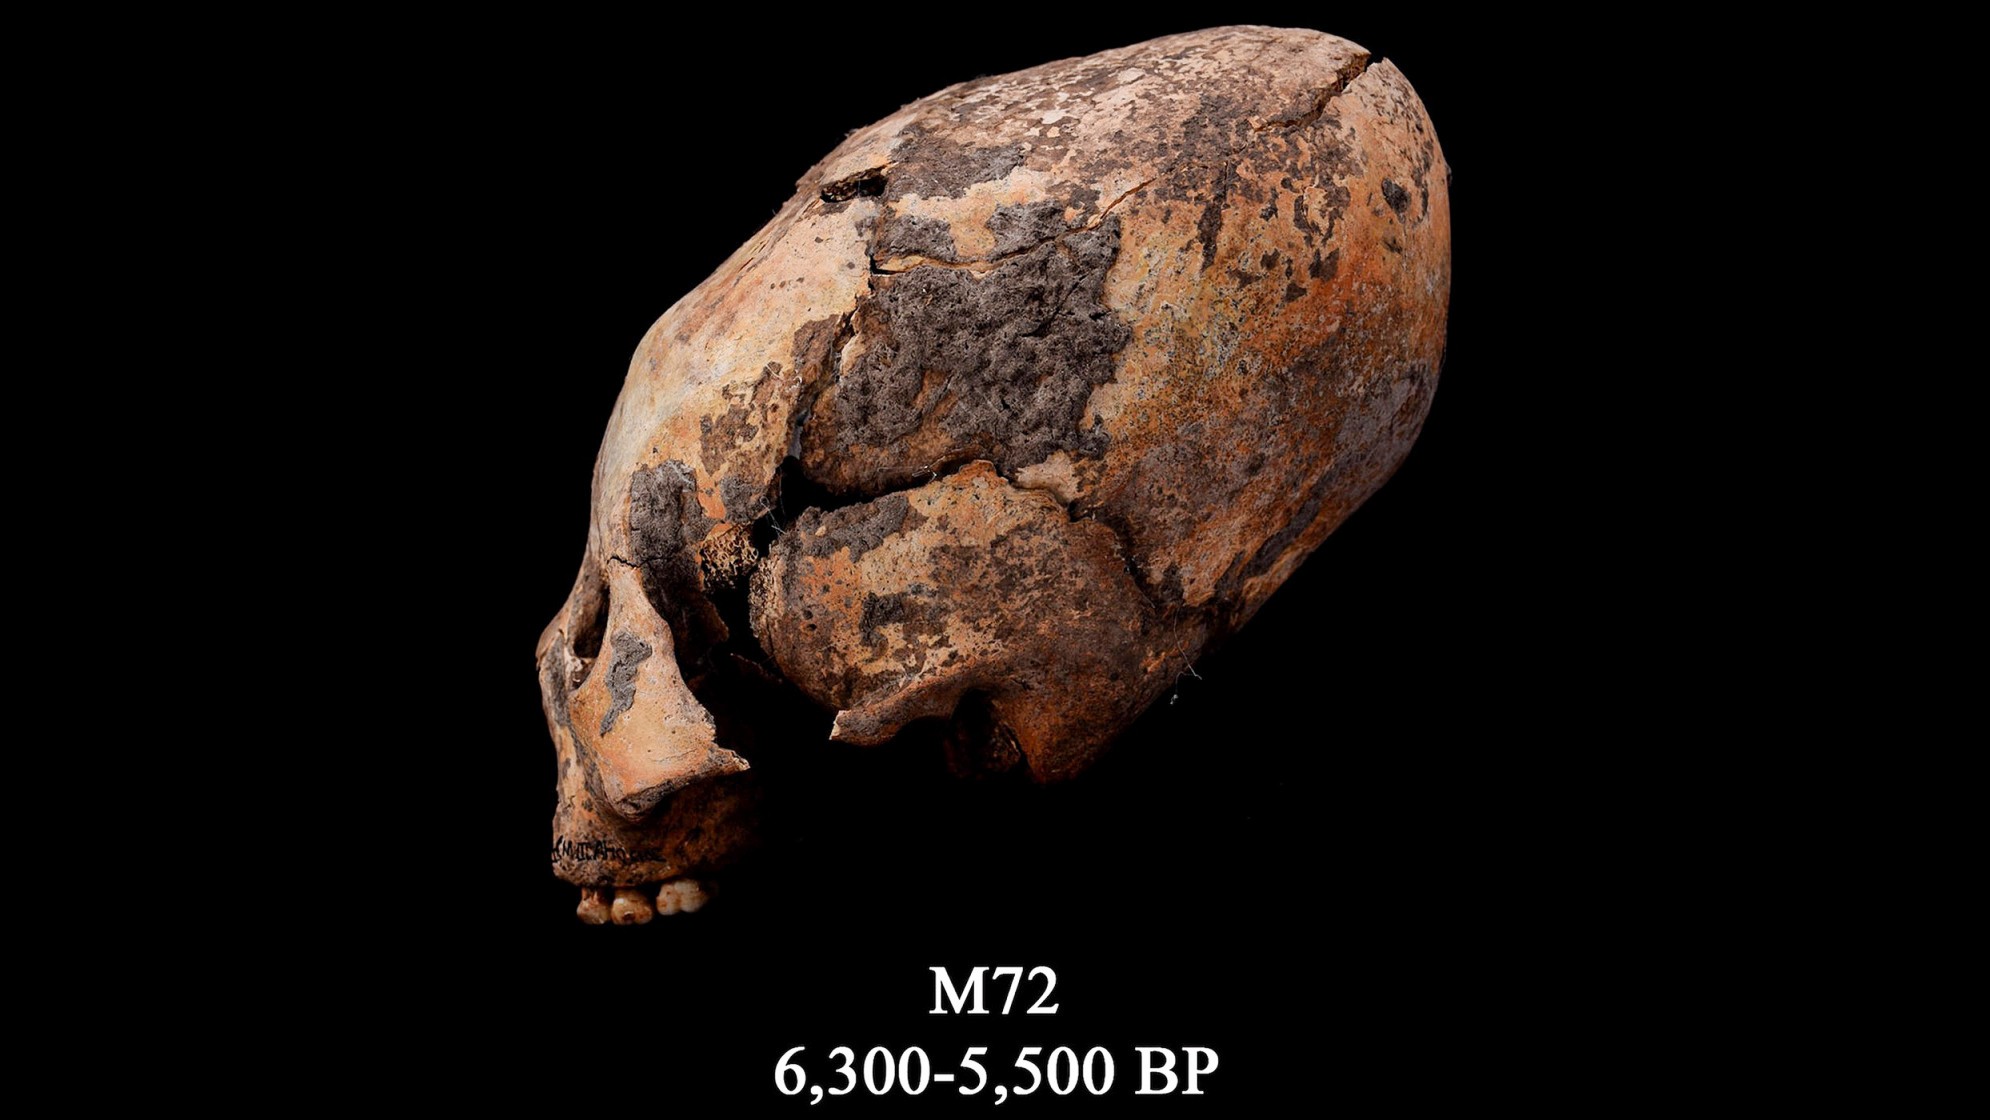 M72として知られる頭骨。 この再形成された人間の頭蓋骨は、中国北東部で発見され、意図的に修正されました